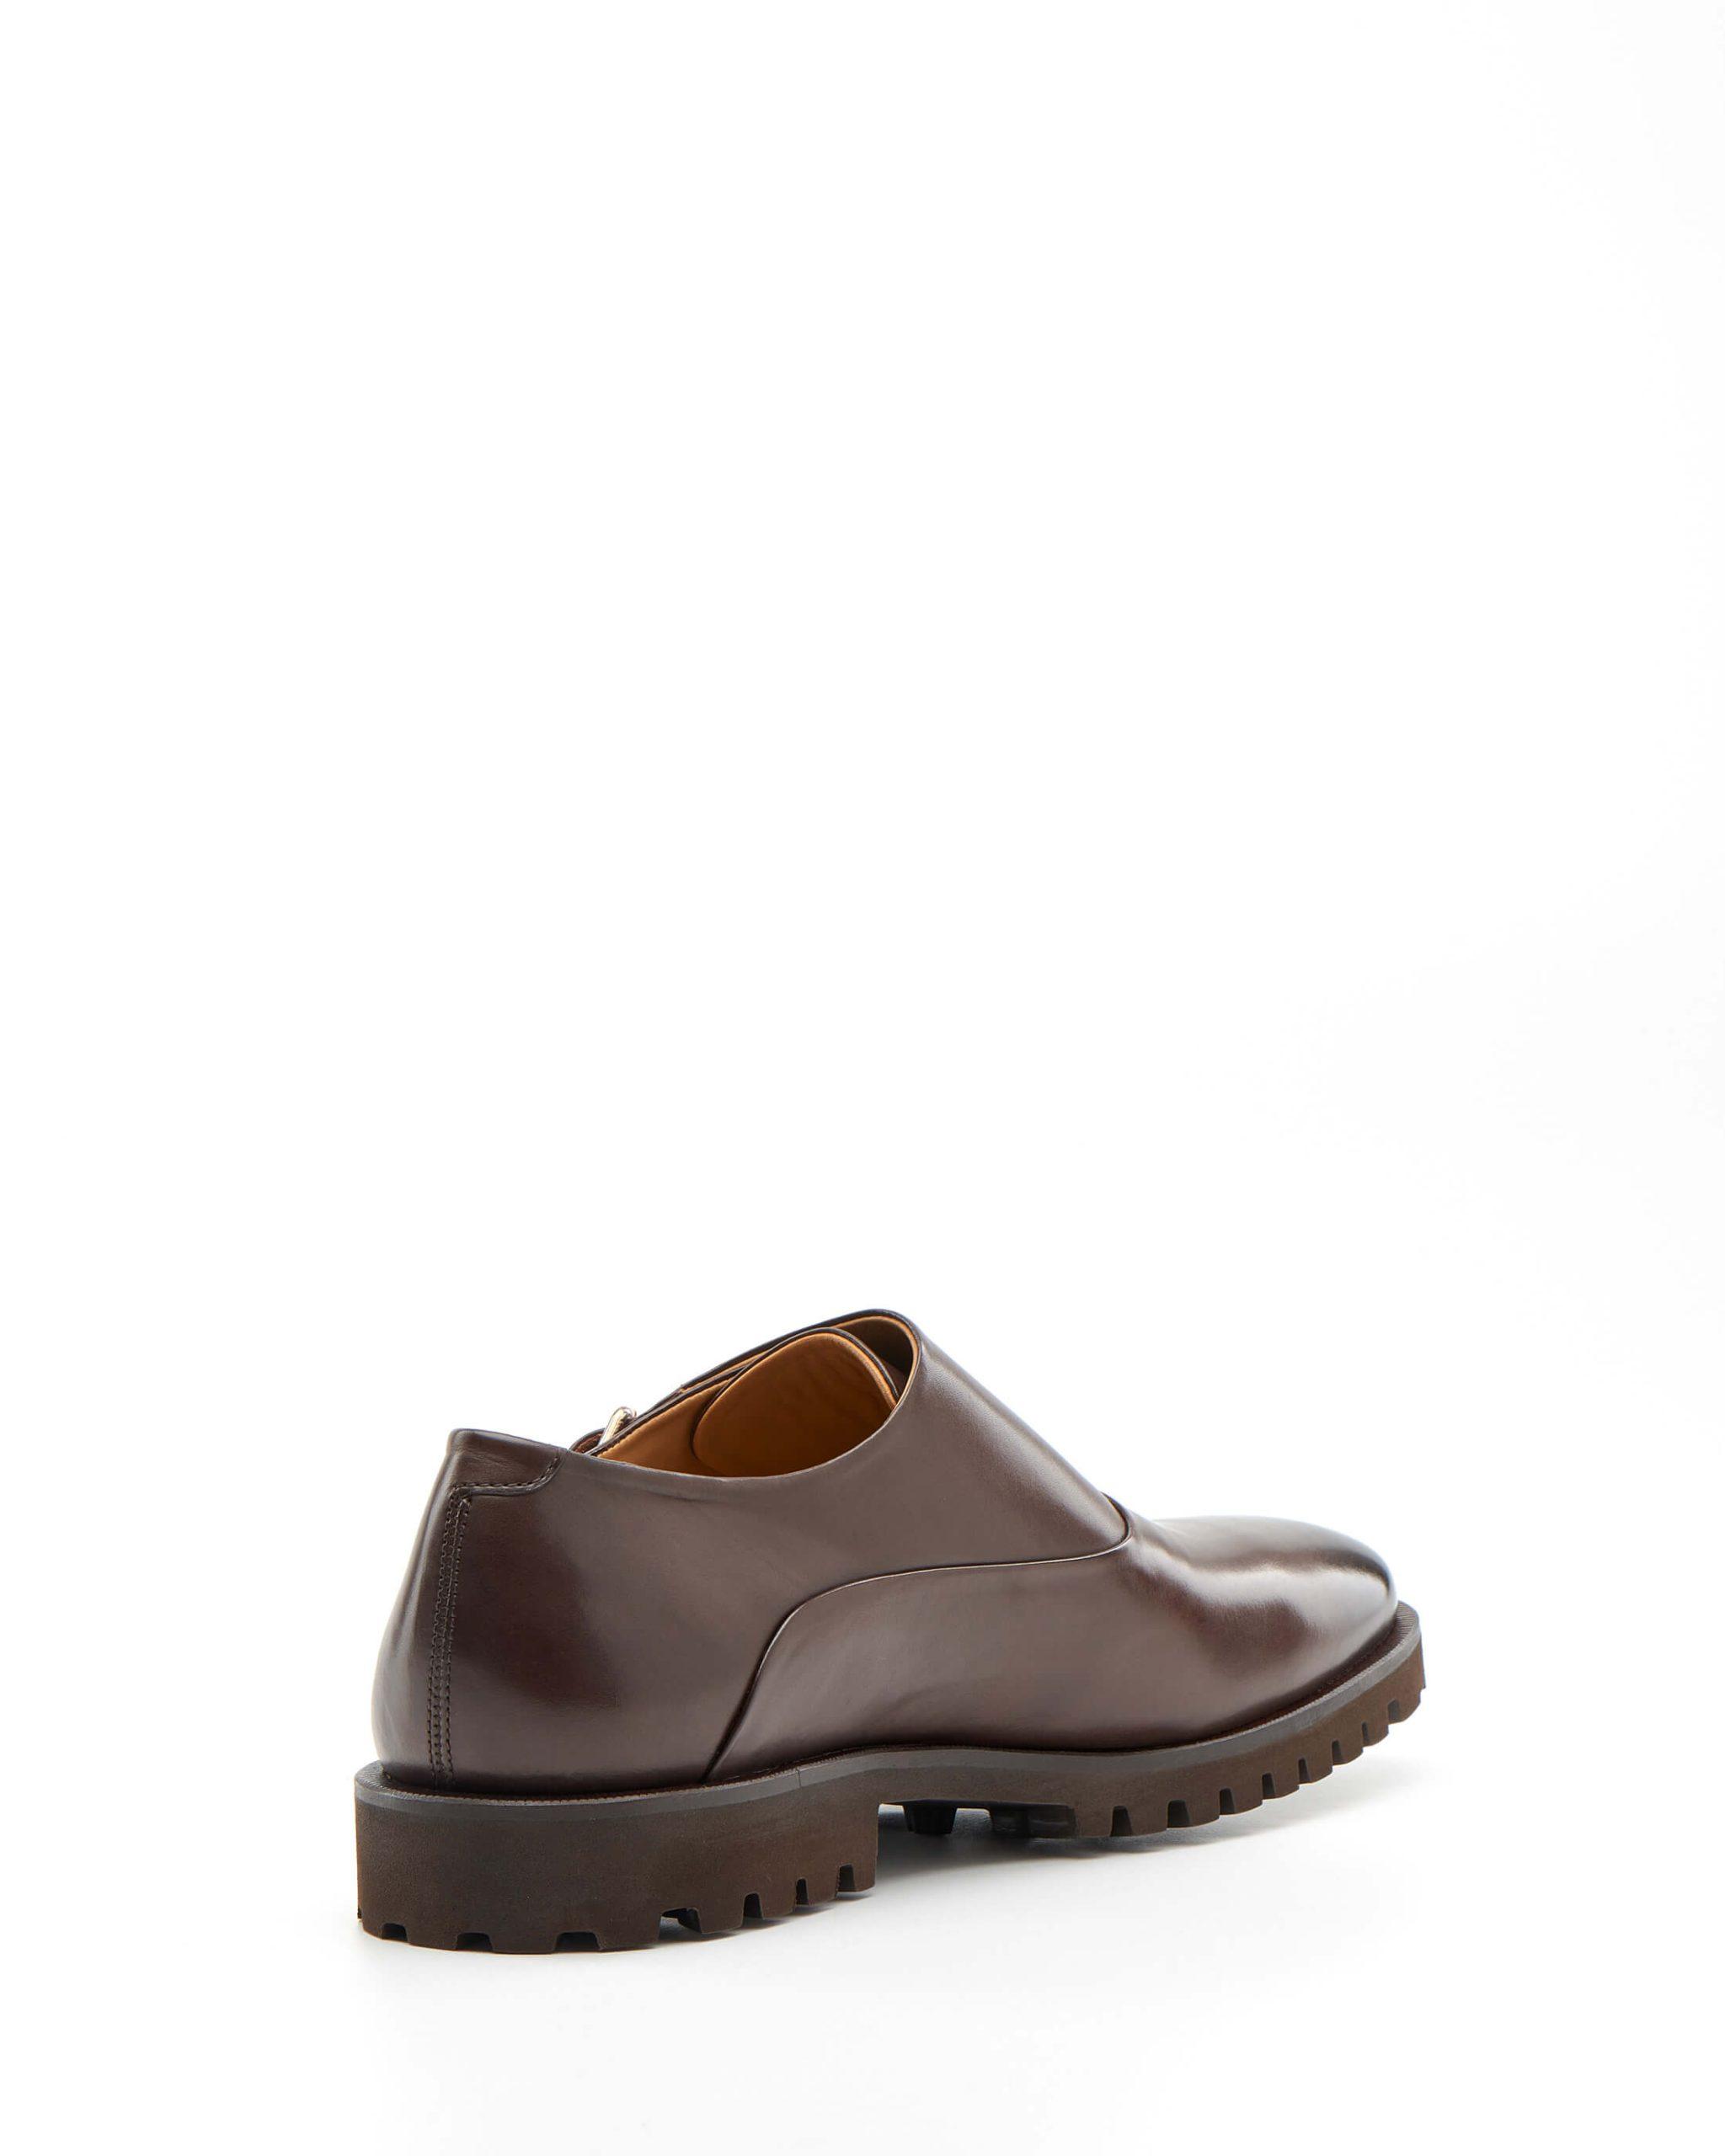 Luis Onofre Portuguese Shoes FW22 – HS0804_02 – Cozy Light brown-3